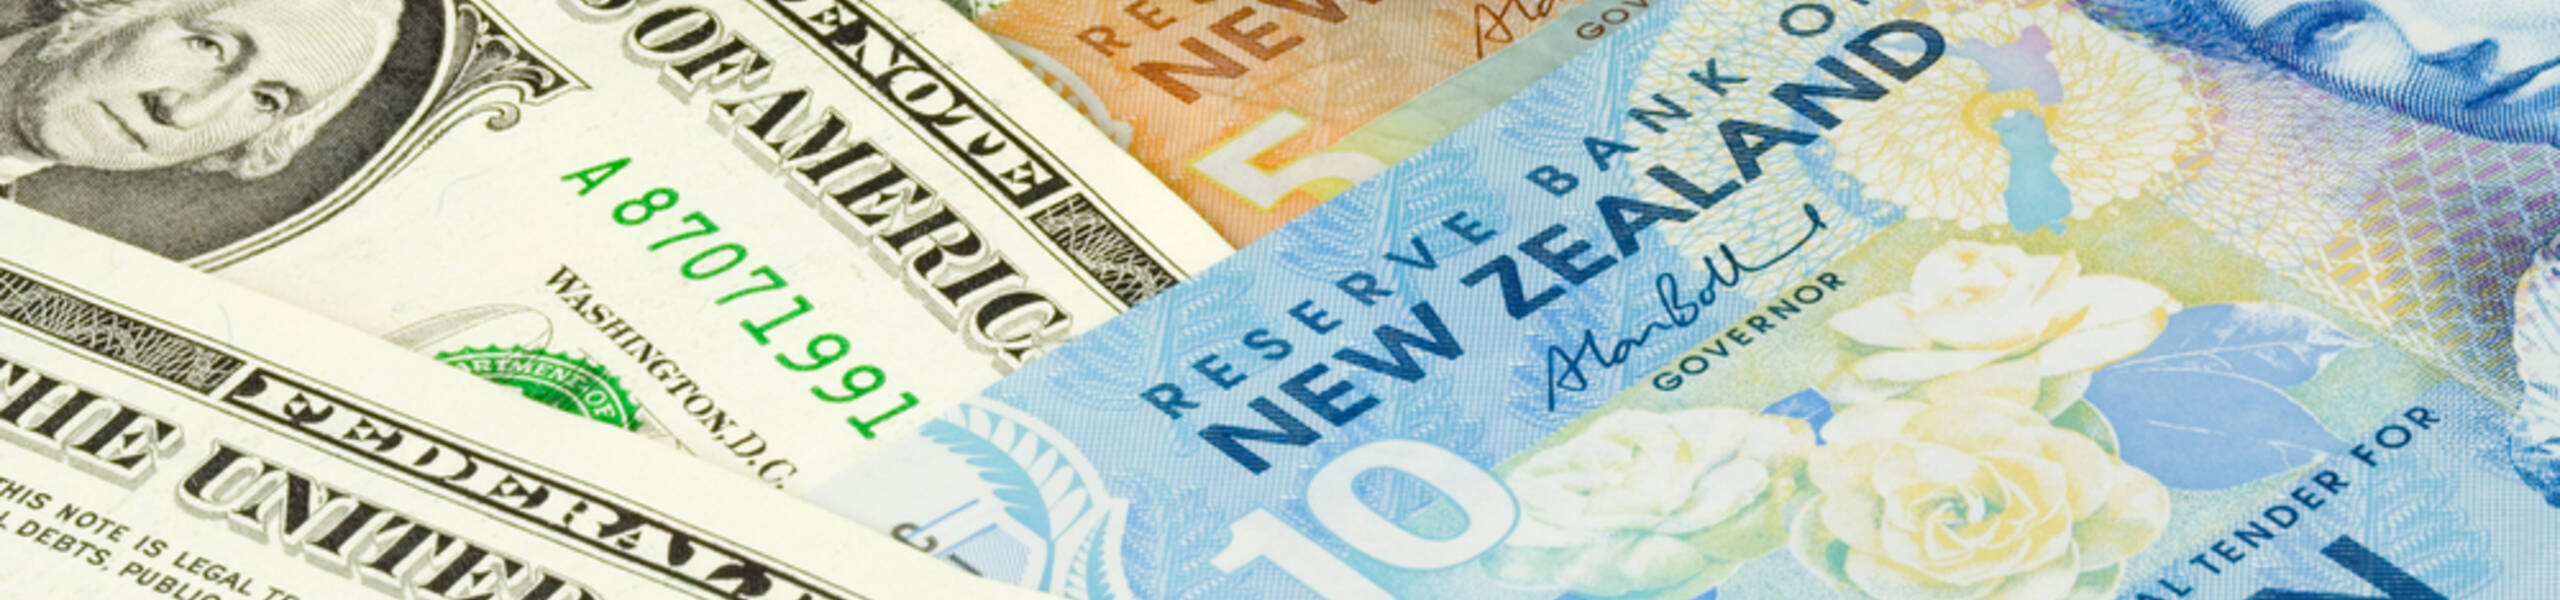 Kế hoạch giao dịch cặp ngoại tệ NZDUSD ngày 06/06/2019